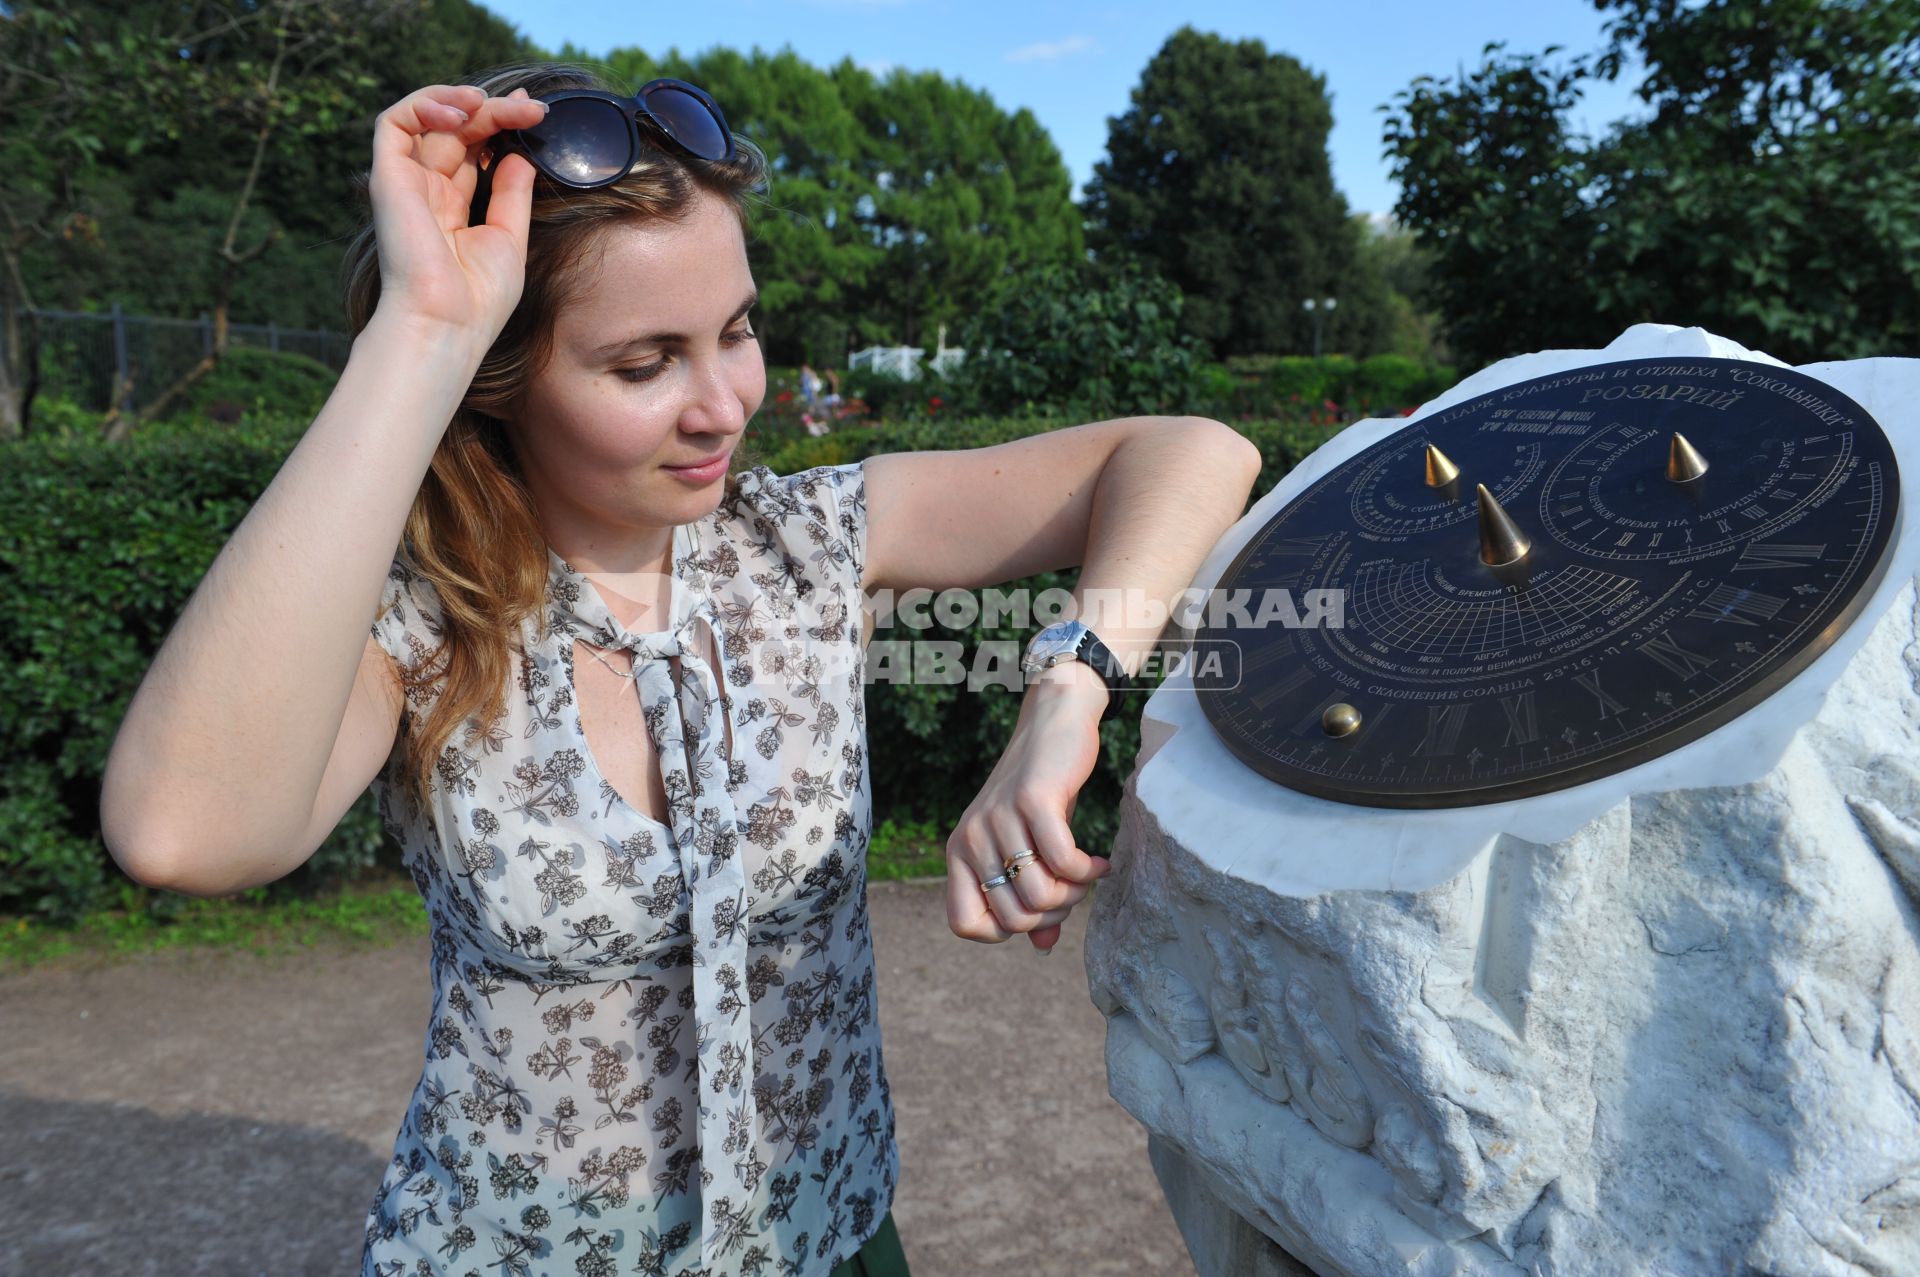 ПКиО `Сокольники`.   На снимке: часы на руке девушки и солнечные часы .